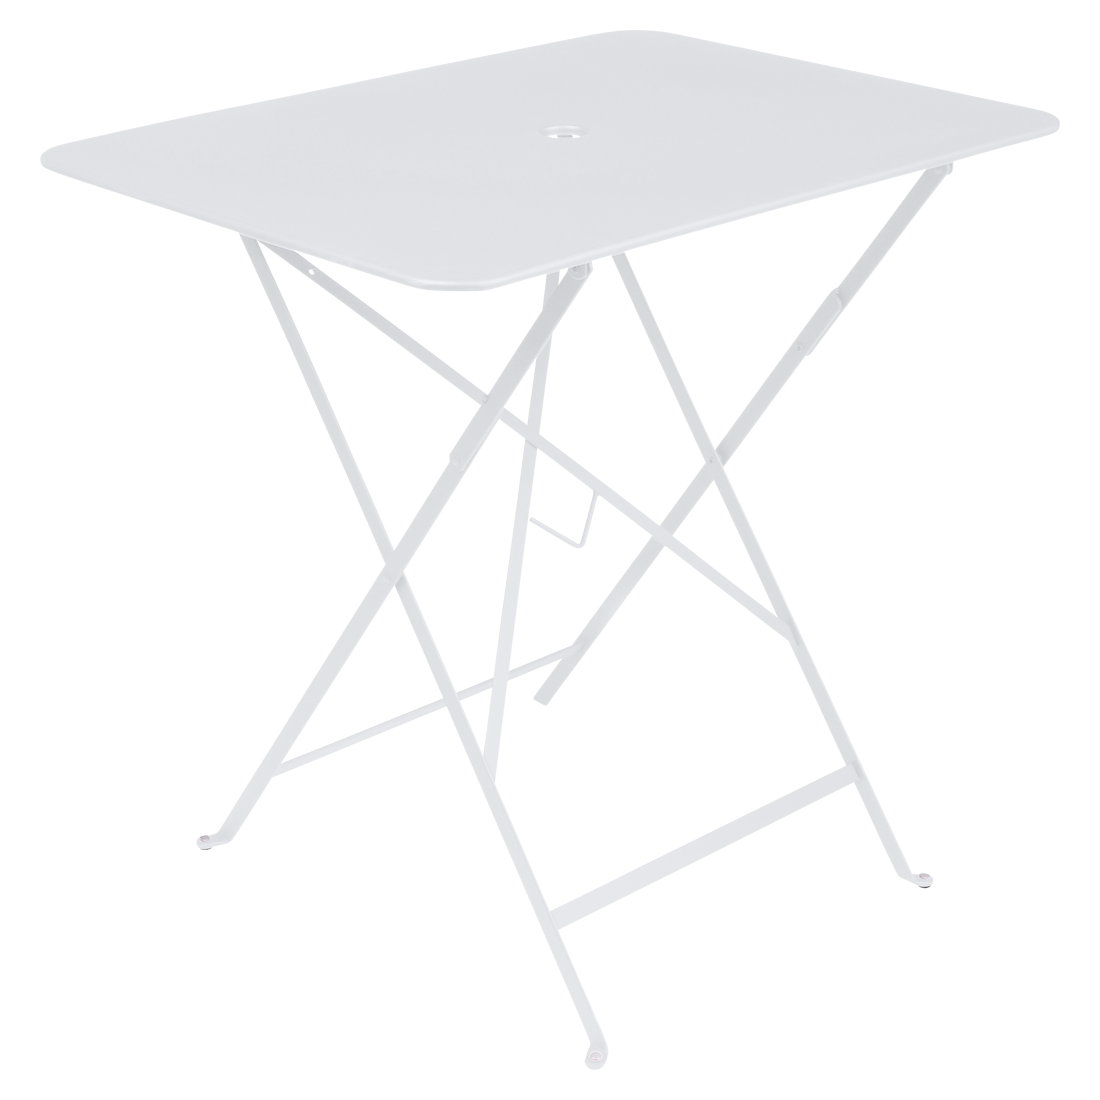 Bílý kovový skládací stůl Fermob Bistro 57 x